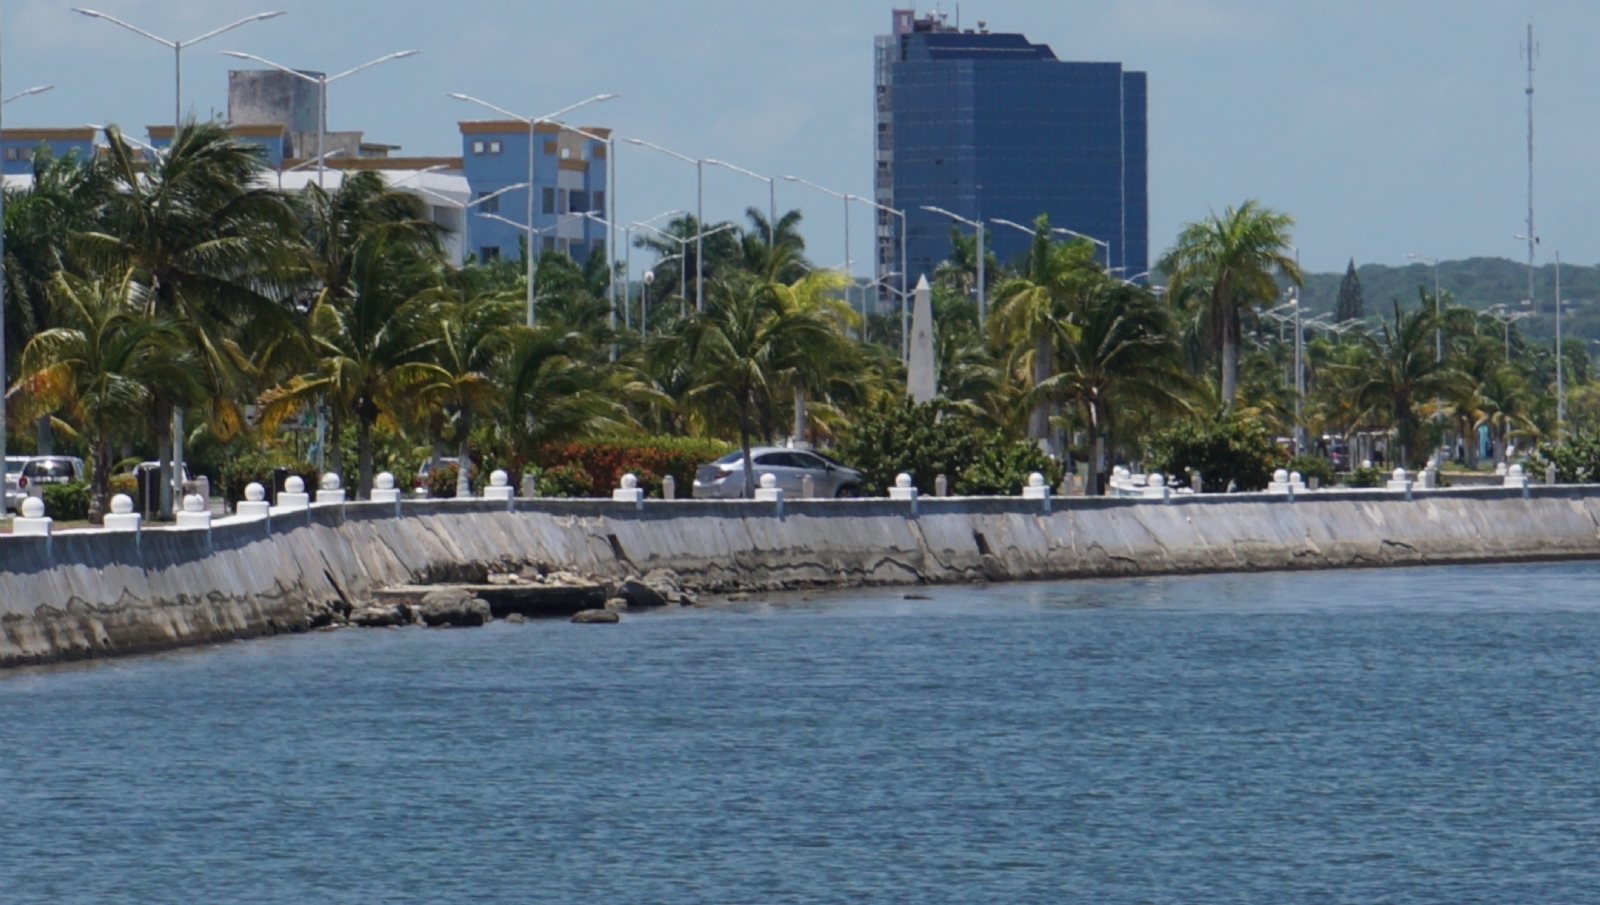 La Semabicc indicó que no tiene atribuciones para el saneamiento, pero que puede apoyar en la limpieza de la Bahía de Campeche